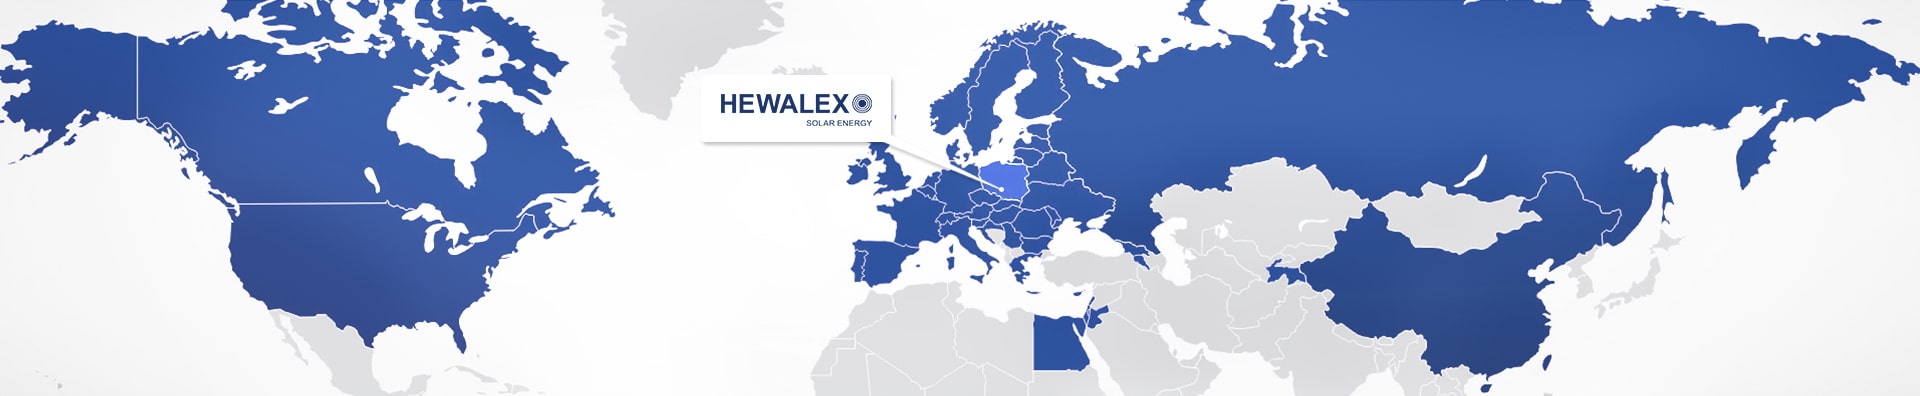 Hewalex export map